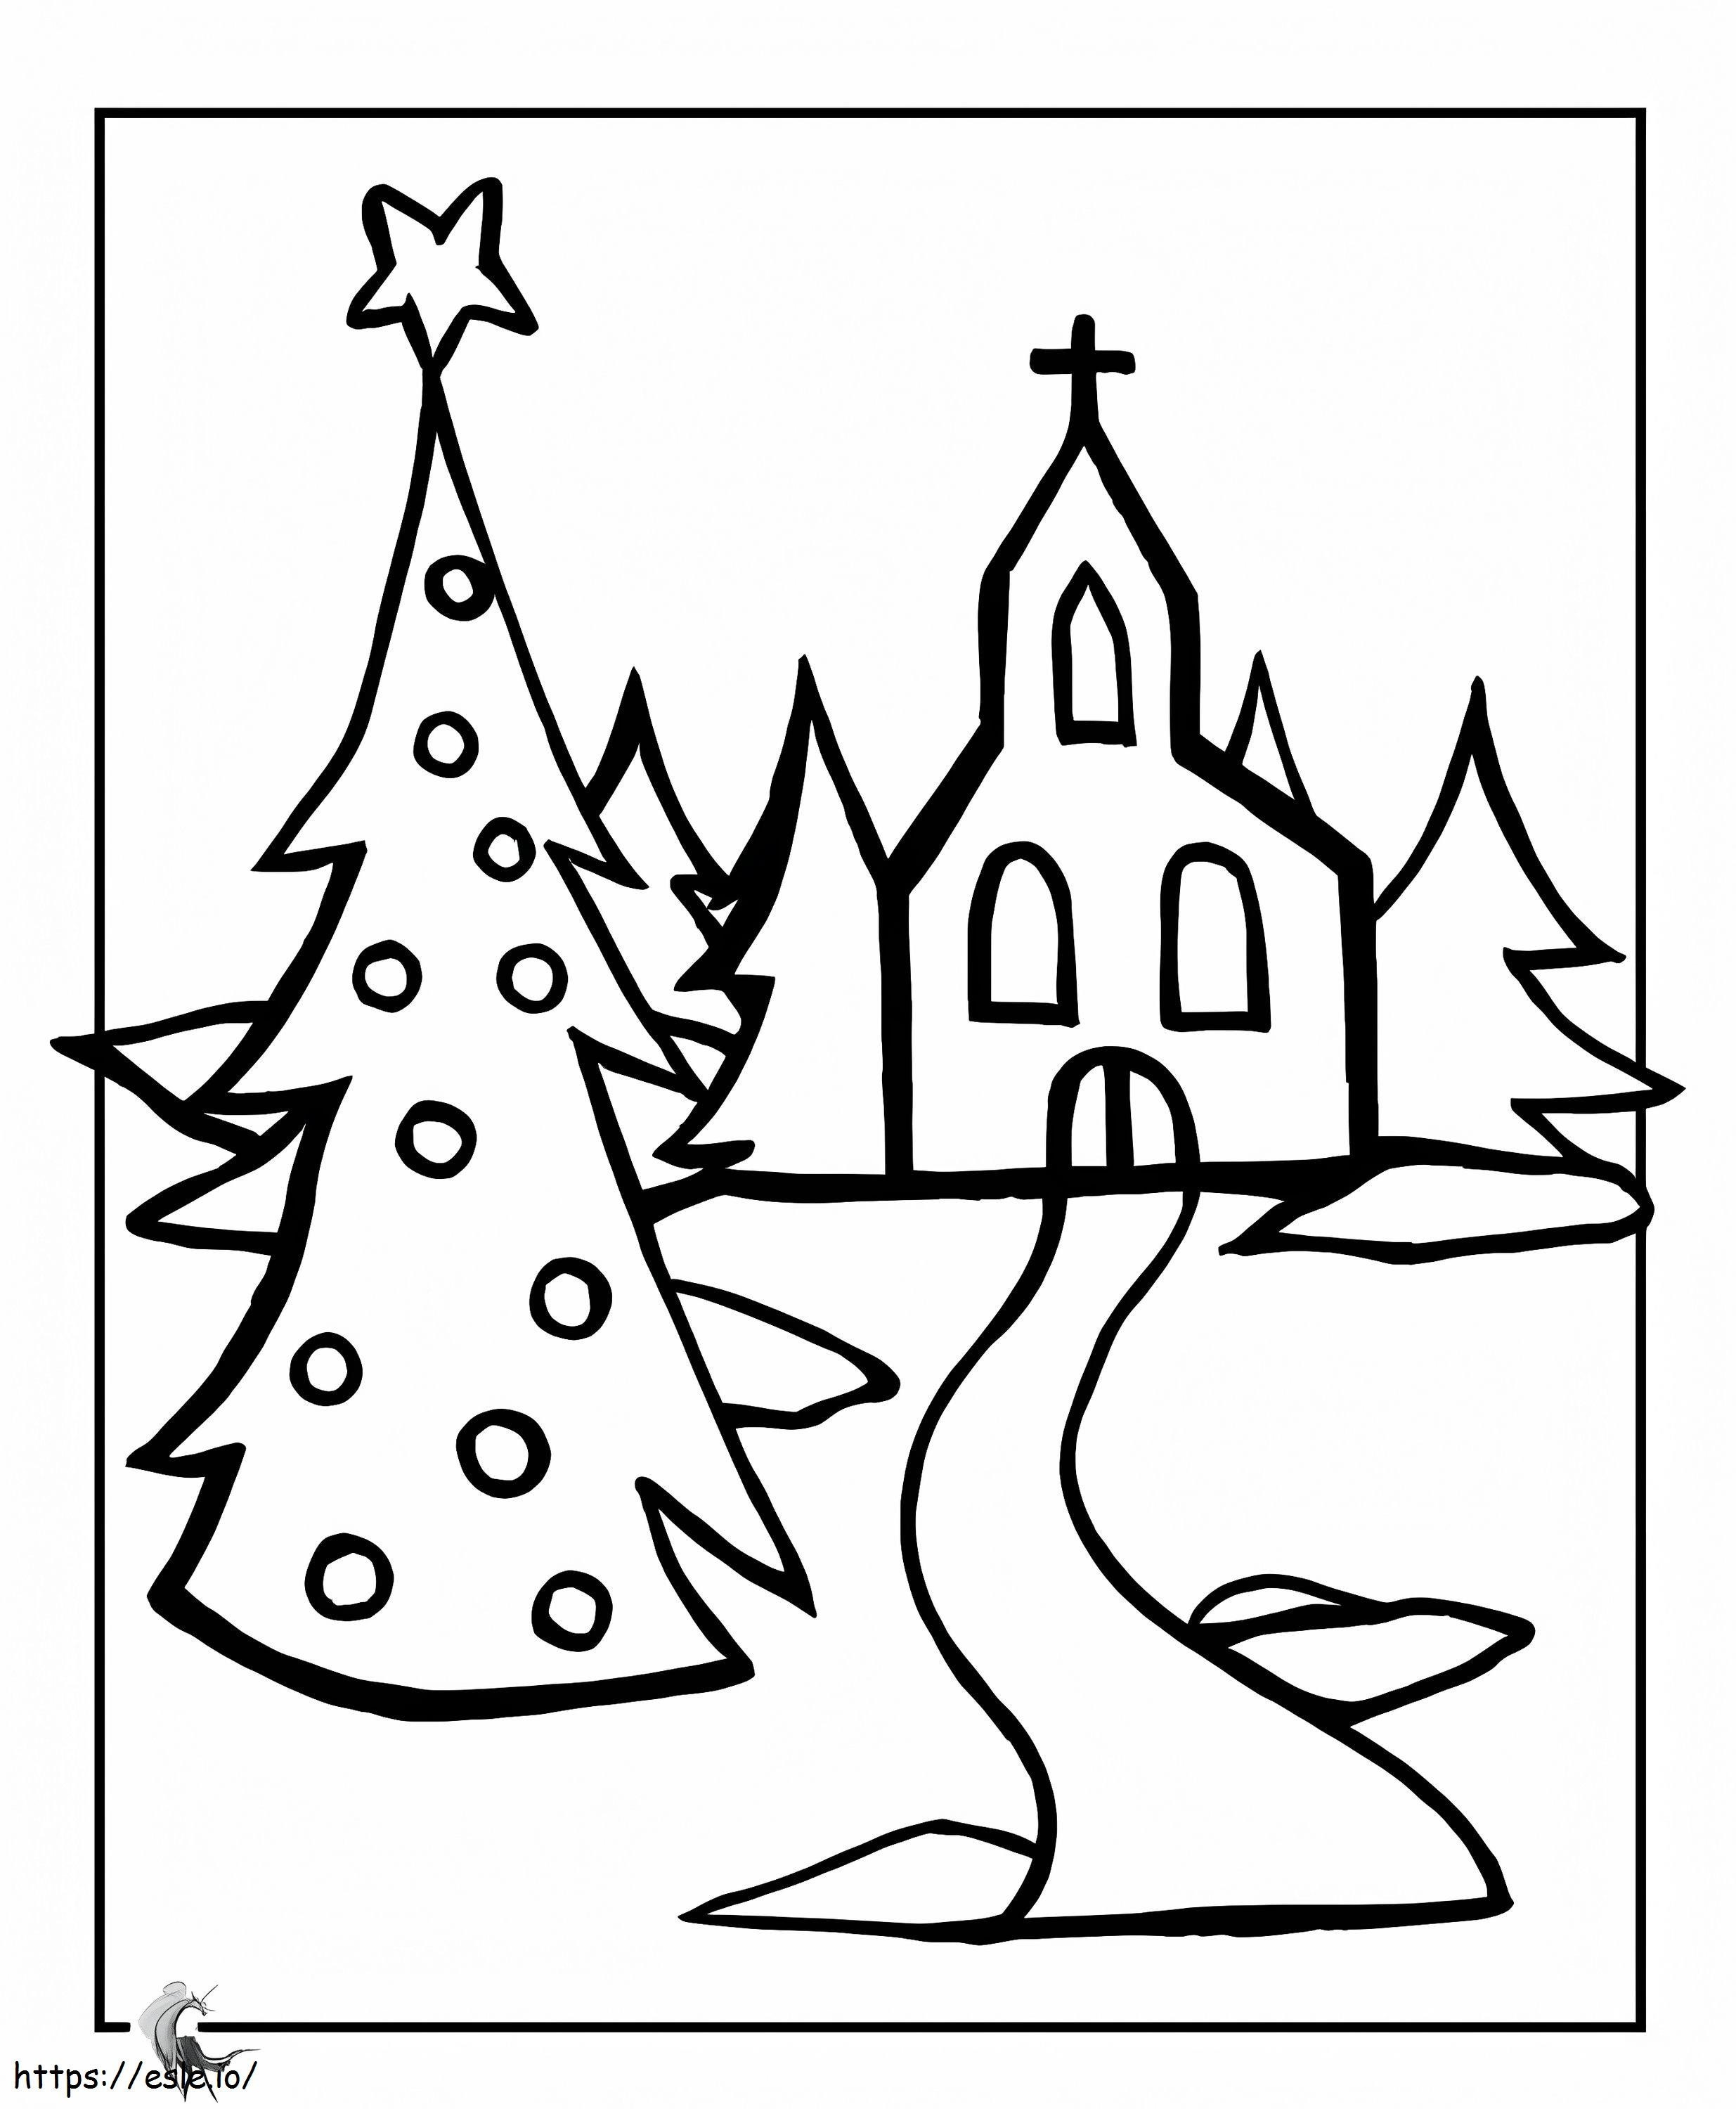 Kościół Bożego Narodzenia kolorowanka